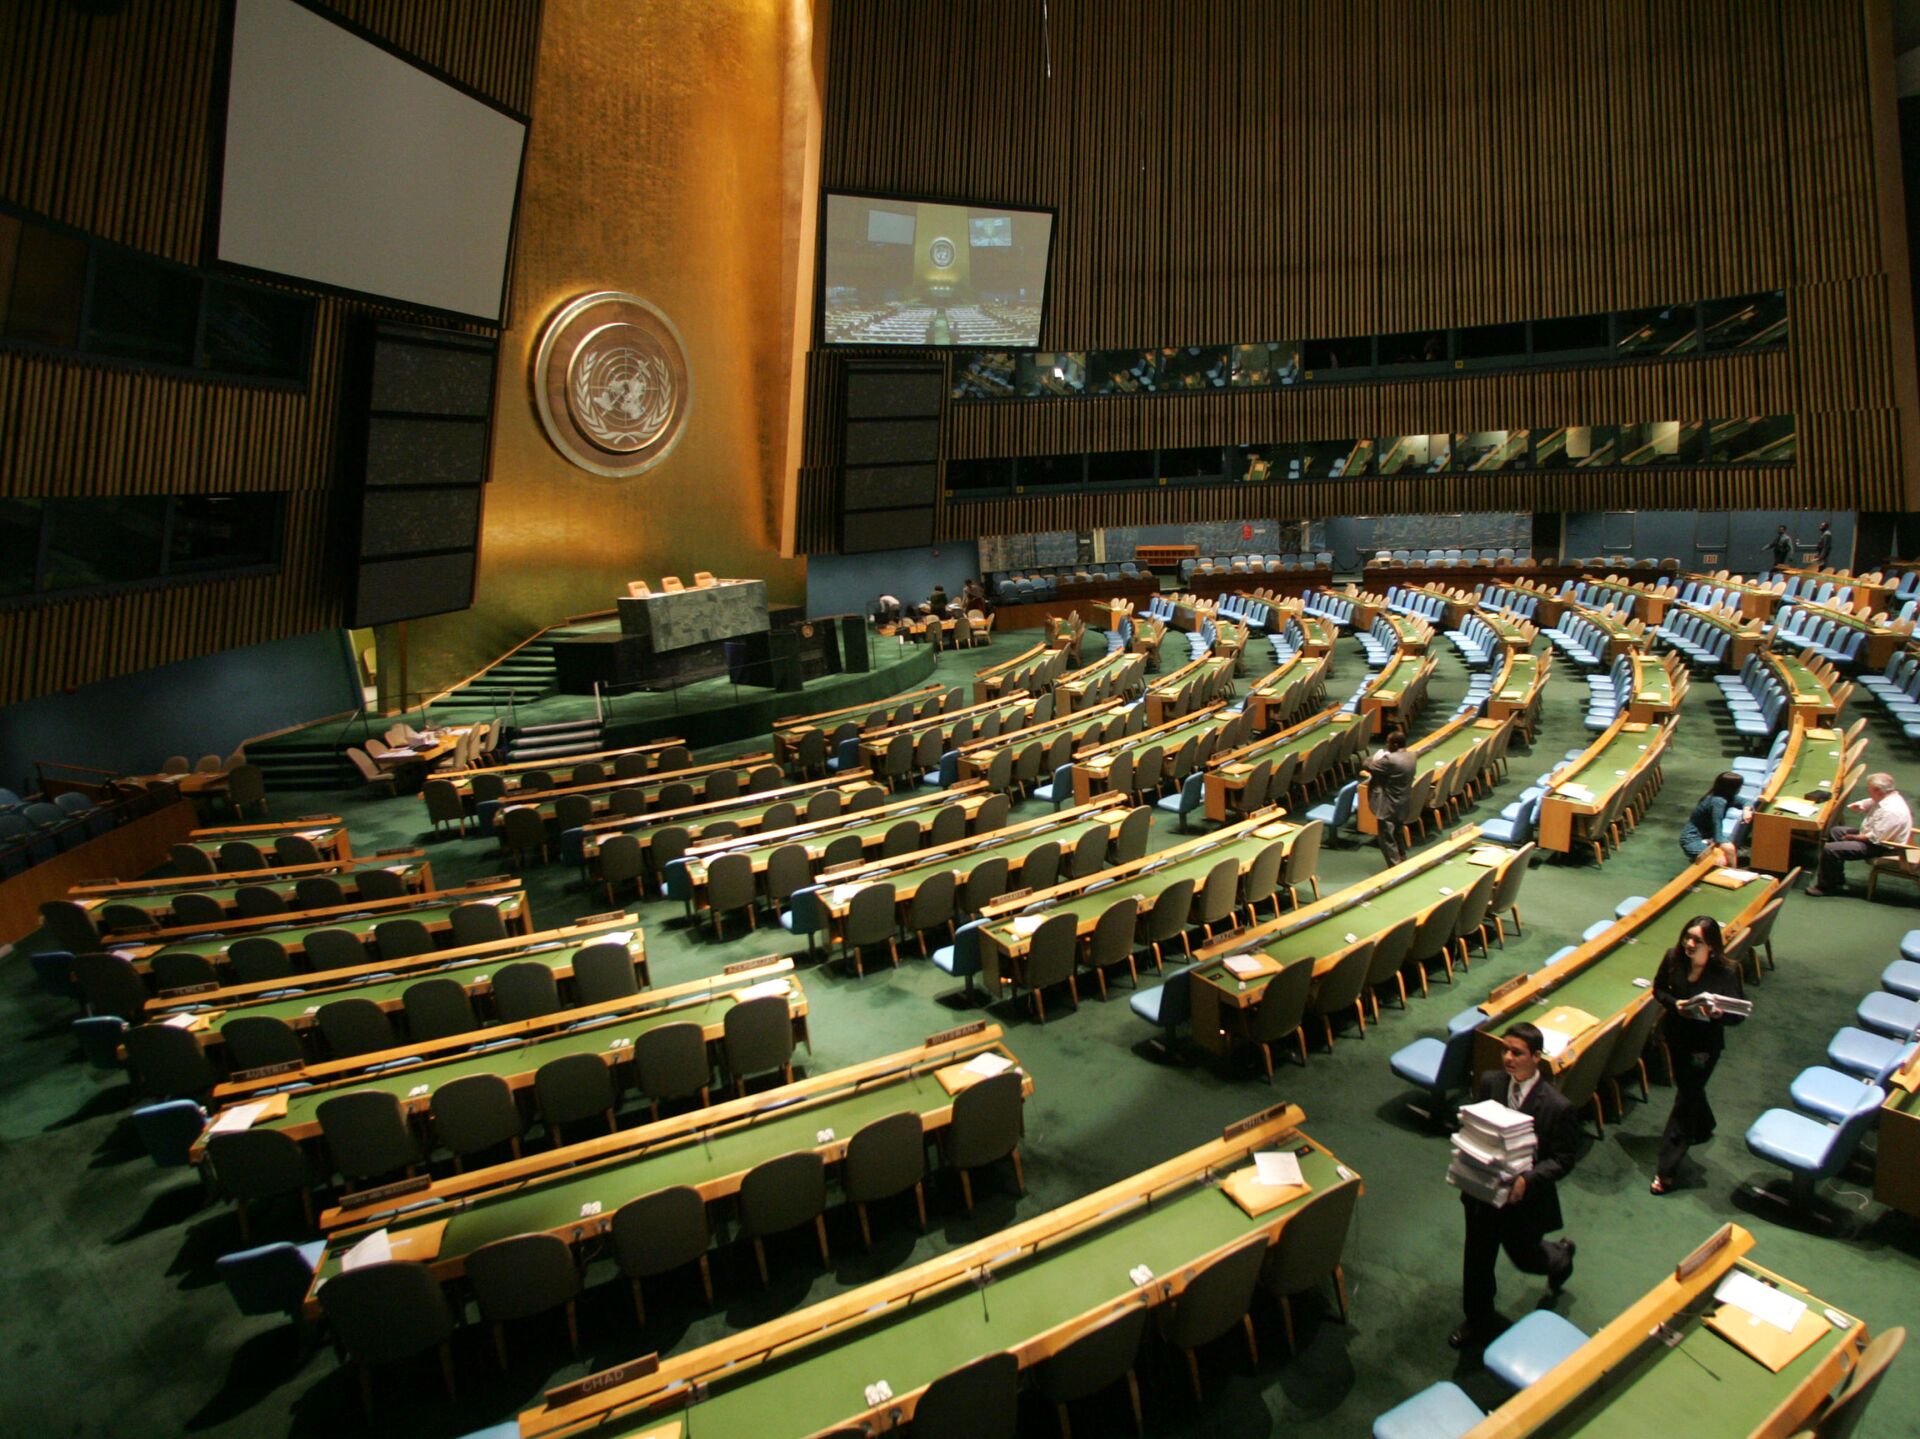 Предшественница оон. Генеральная Ассамблея ООН (га ООН). Зал Генеральной Ассамблеи ООН. Зал заседания Генассамблеи ООН трибуна. Генеральная Ассамблея ООН Нью-Йорк.